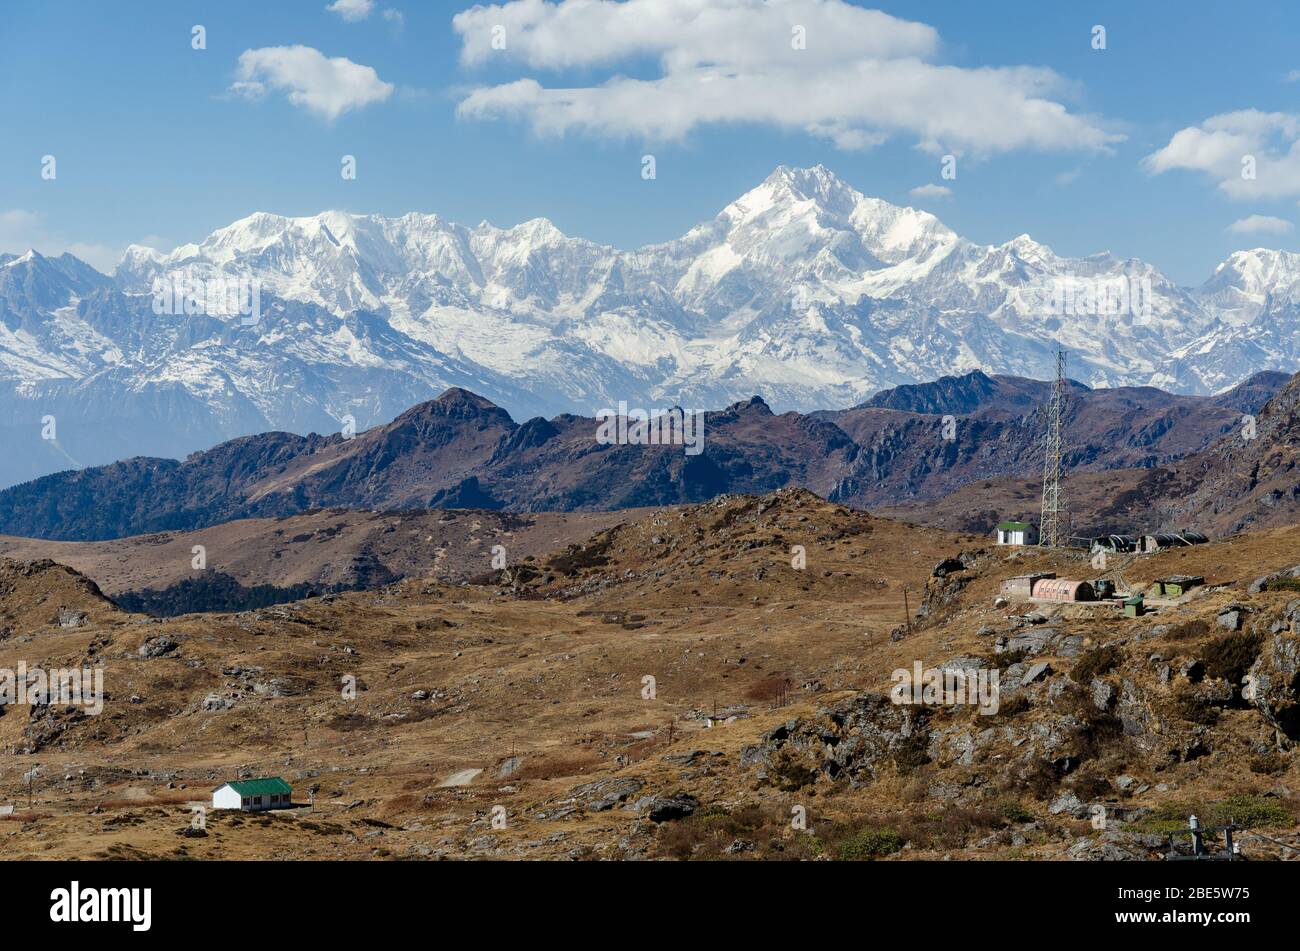 Massiccio innevato massiccio di Kangchenjunga che domina il paesaggio arido e arido durante dicembre, come visto da Nathu la Pass, Sikkim, India Foto Stock